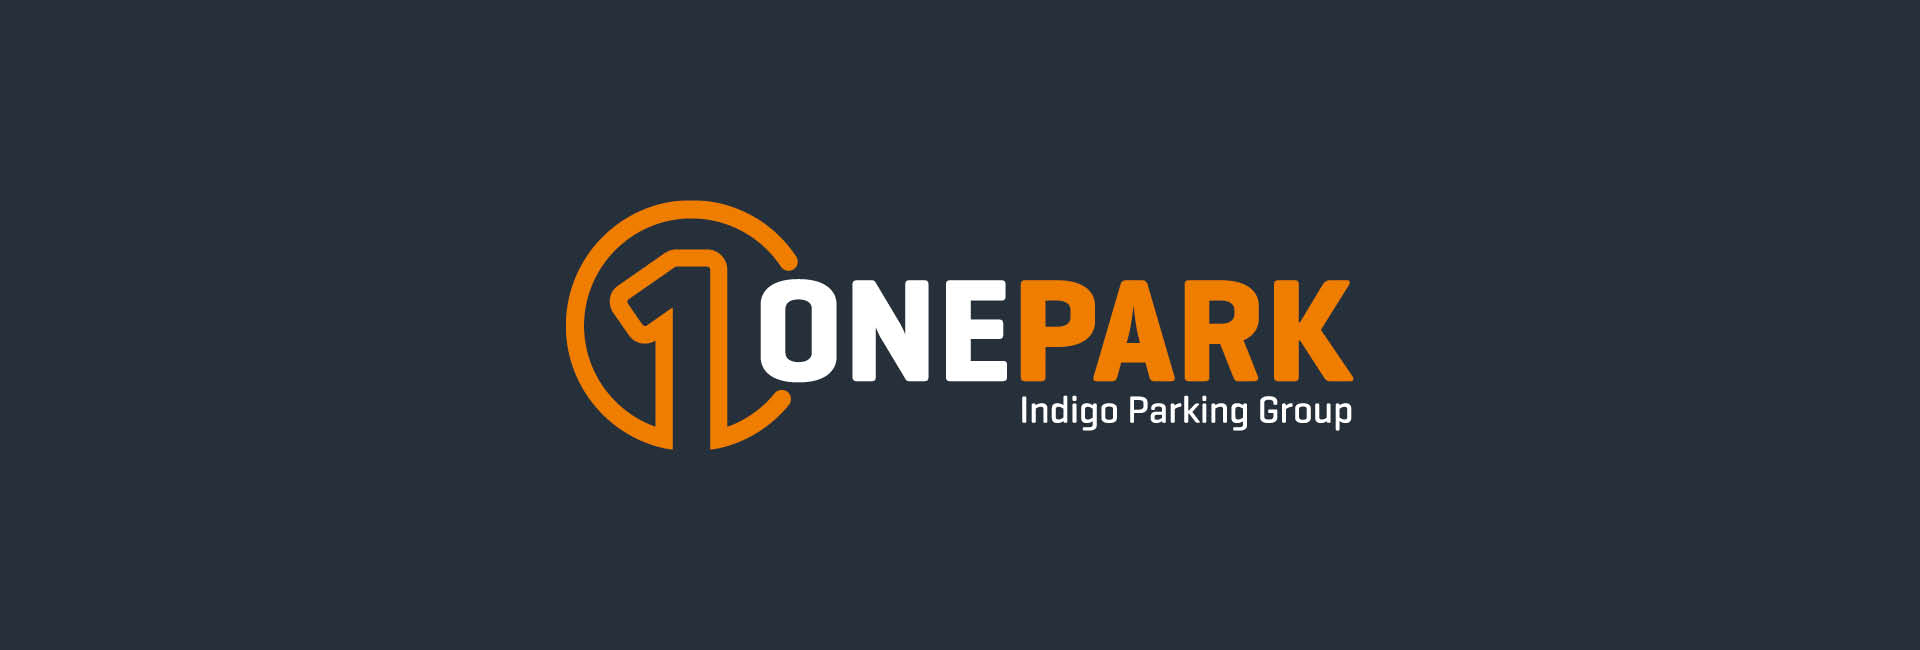 OnePark logo